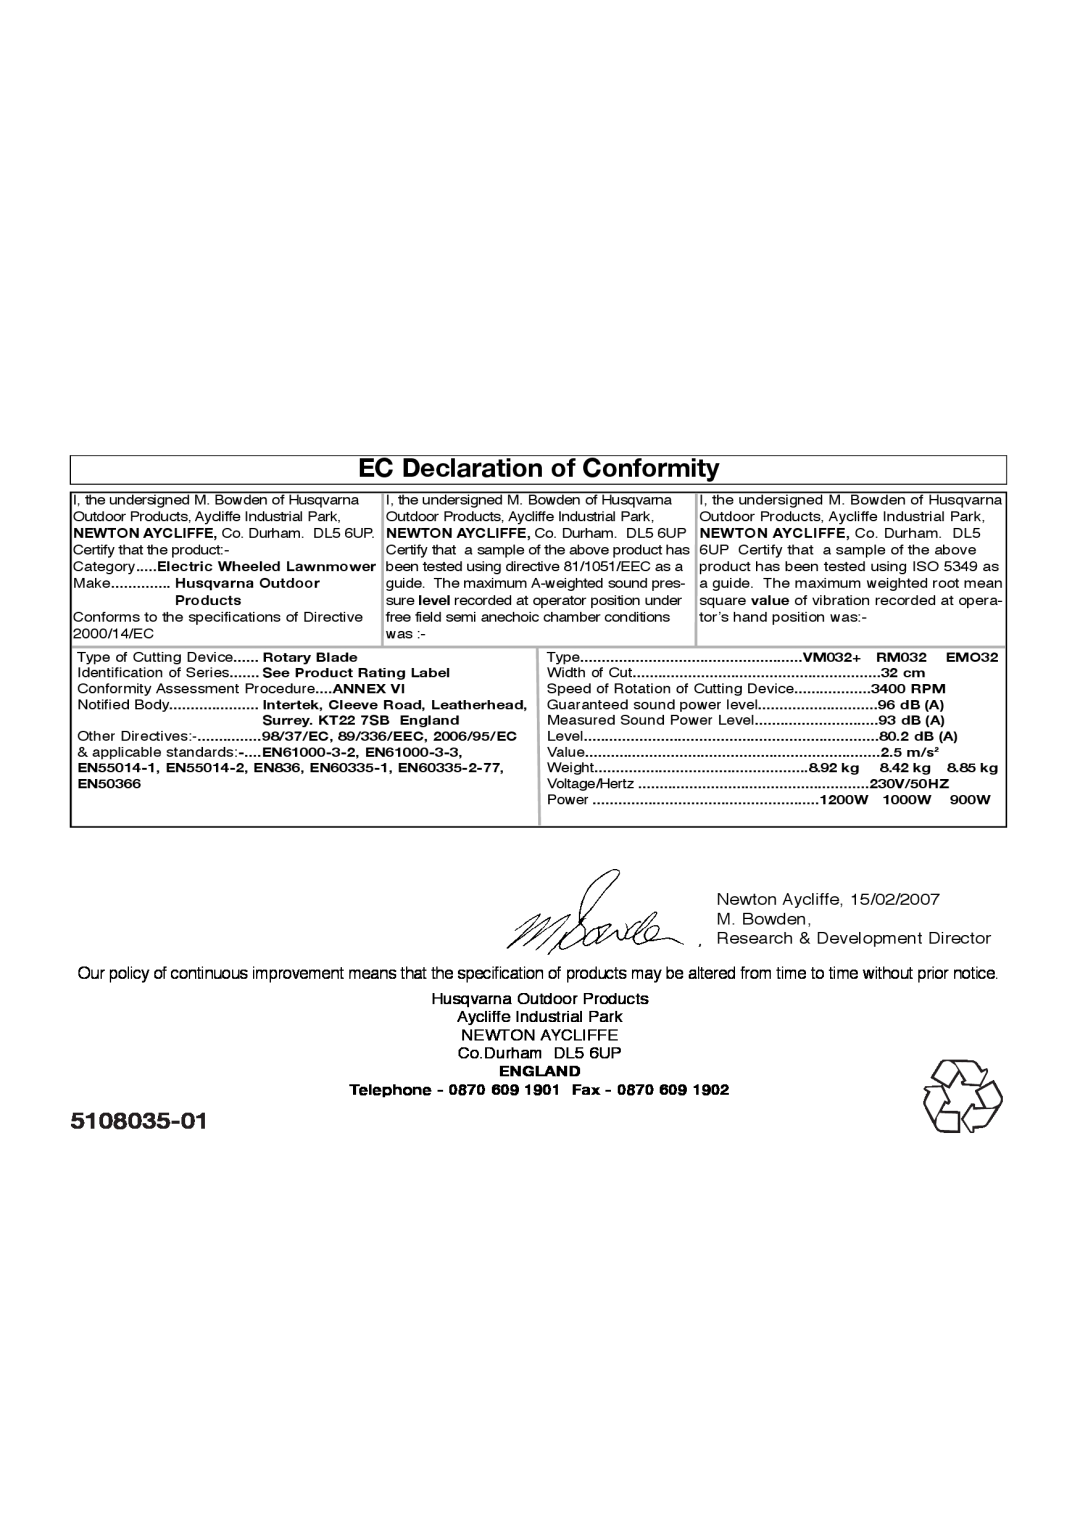 Flymo RM032, EM032 manual EC Declaration of Conformity, 5108035-01, ENGLAND Telephone - 0870 609 1901 Fax 